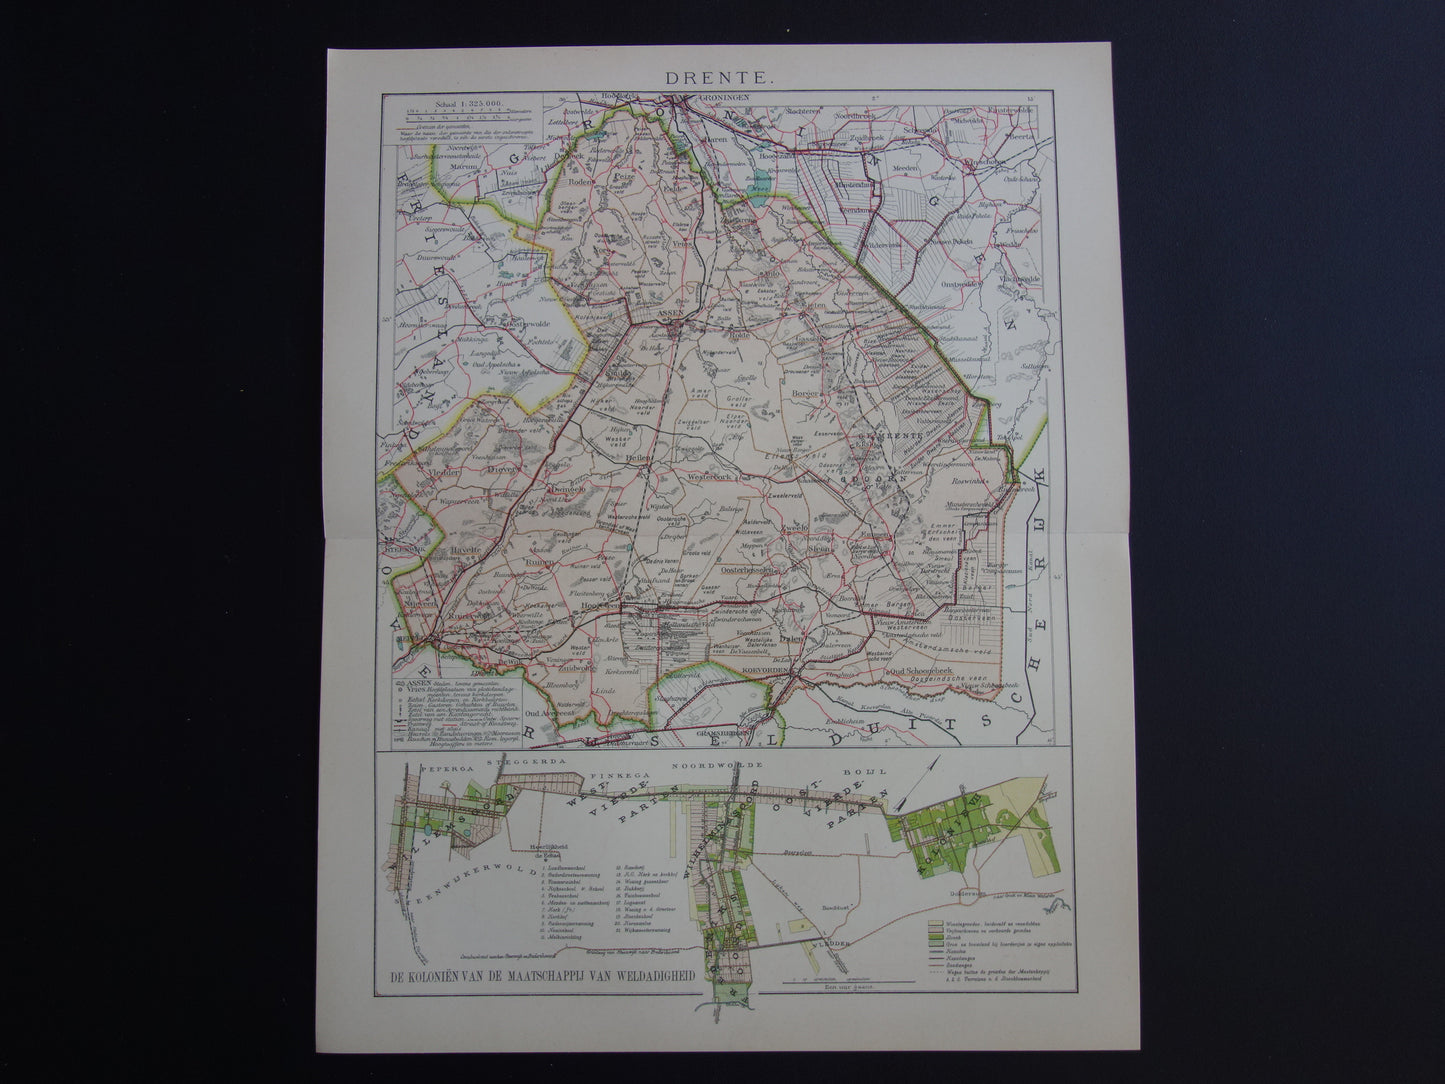 DRENTHE Oude landkaart van de provincie Drenthe uit 1907 originele vintage kaart Assen Maatschappij Weldadigheid